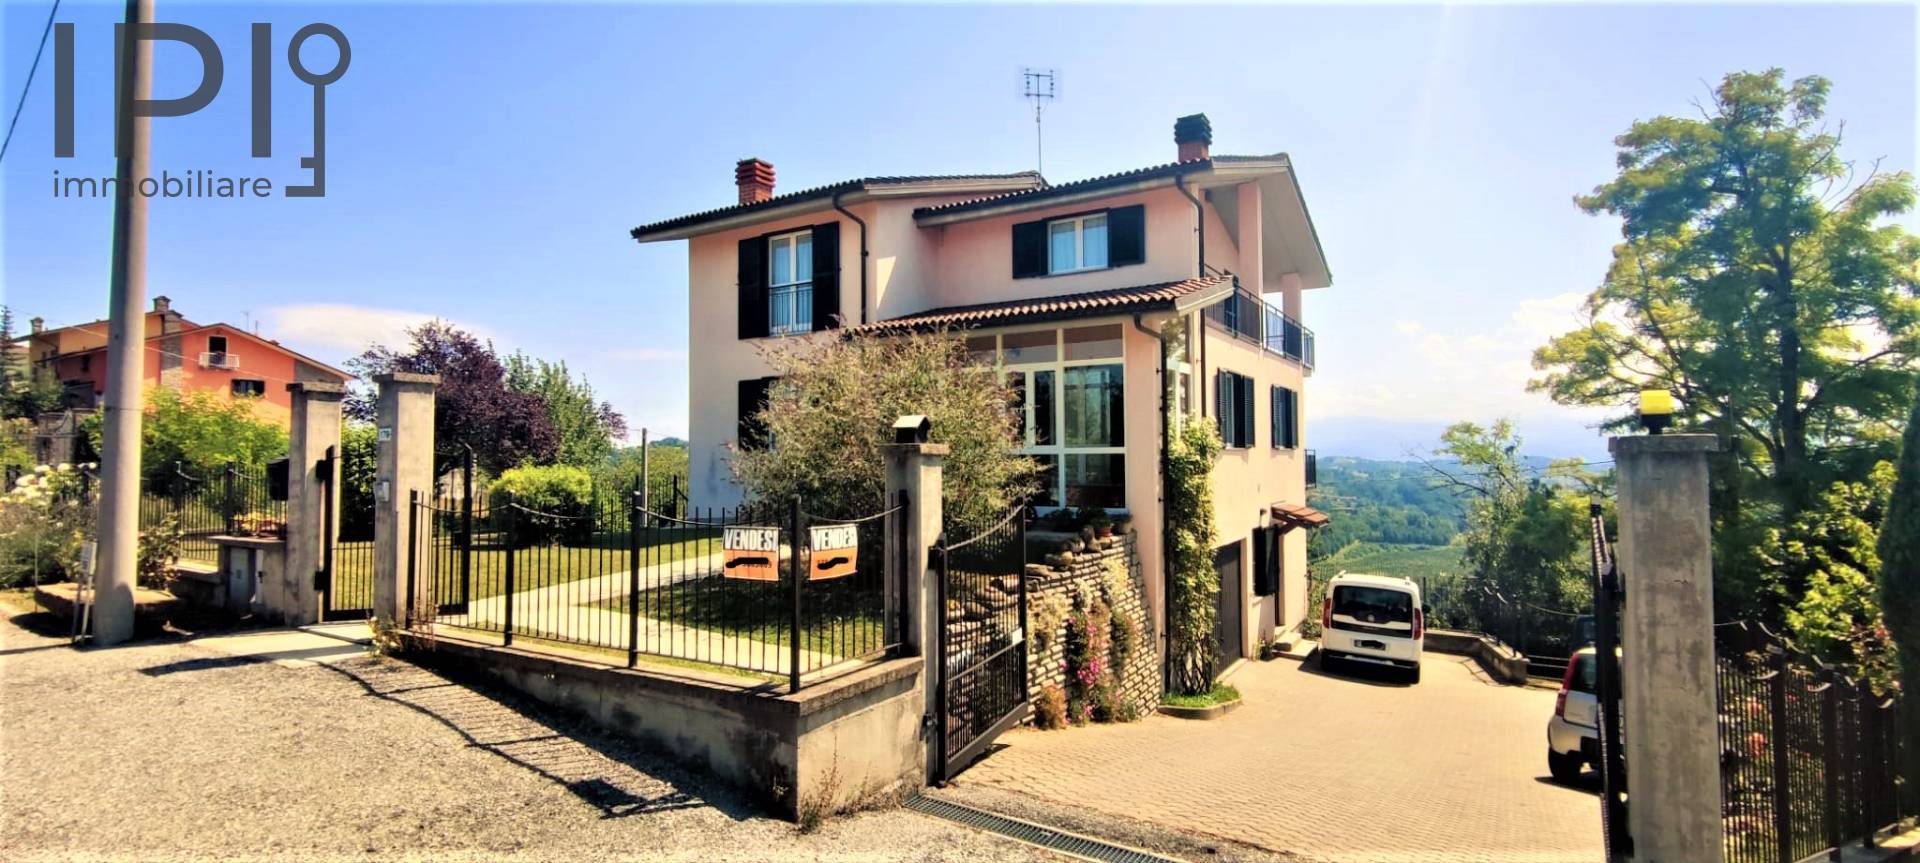 Villa in vendita a Murazzano, 10 locali, prezzo € 280.000 | PortaleAgenzieImmobiliari.it